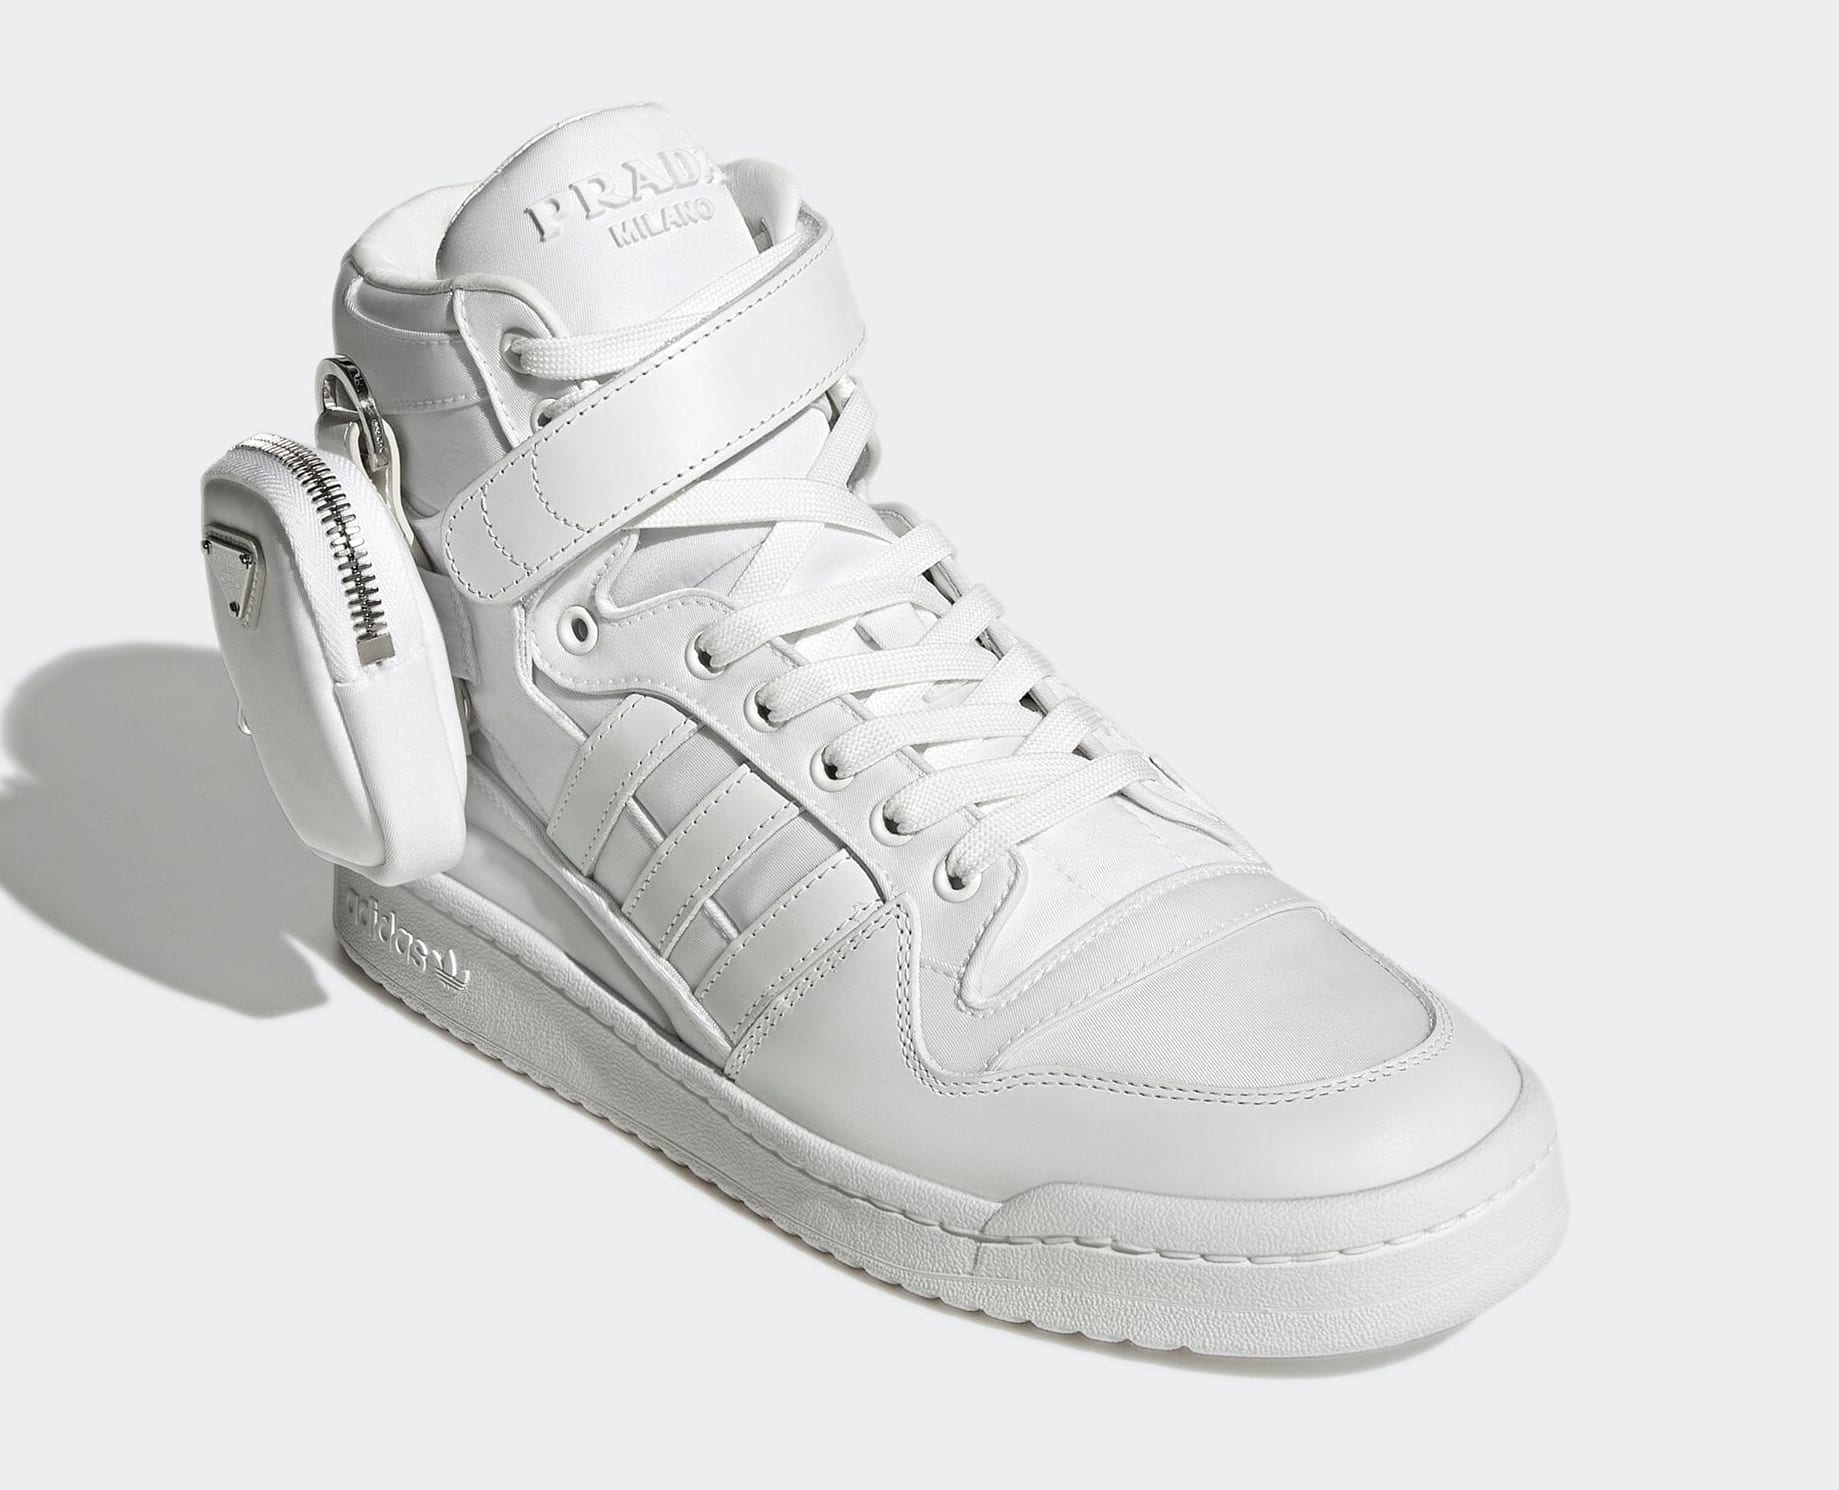 Prada x Adidas Forum High 'White' GY7041 Front